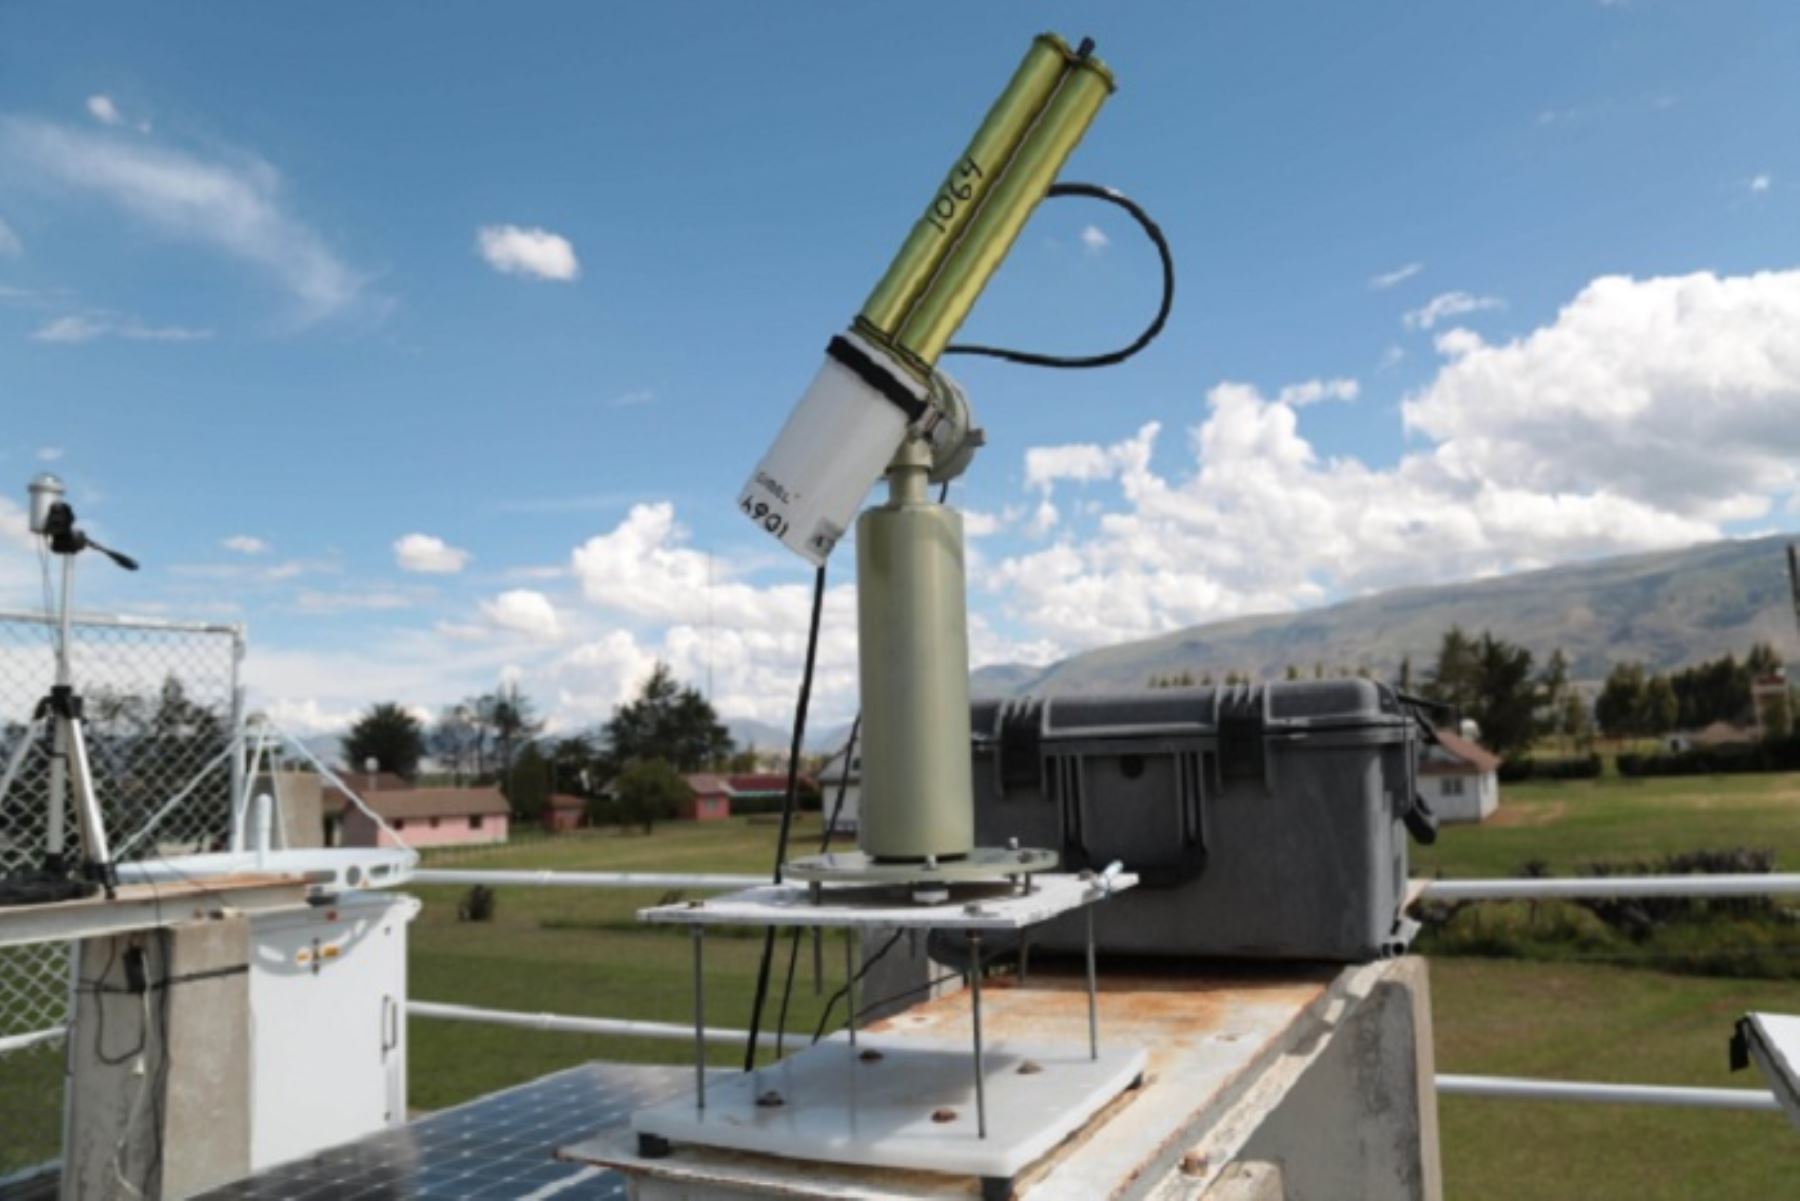 El observatorio cuenta hoy con instrumentos modernos de monitoreo y recolección de datos para el estudio e investigación en física atmosférica y así comprender la variabilidad de climas en el valle del Mantaro.